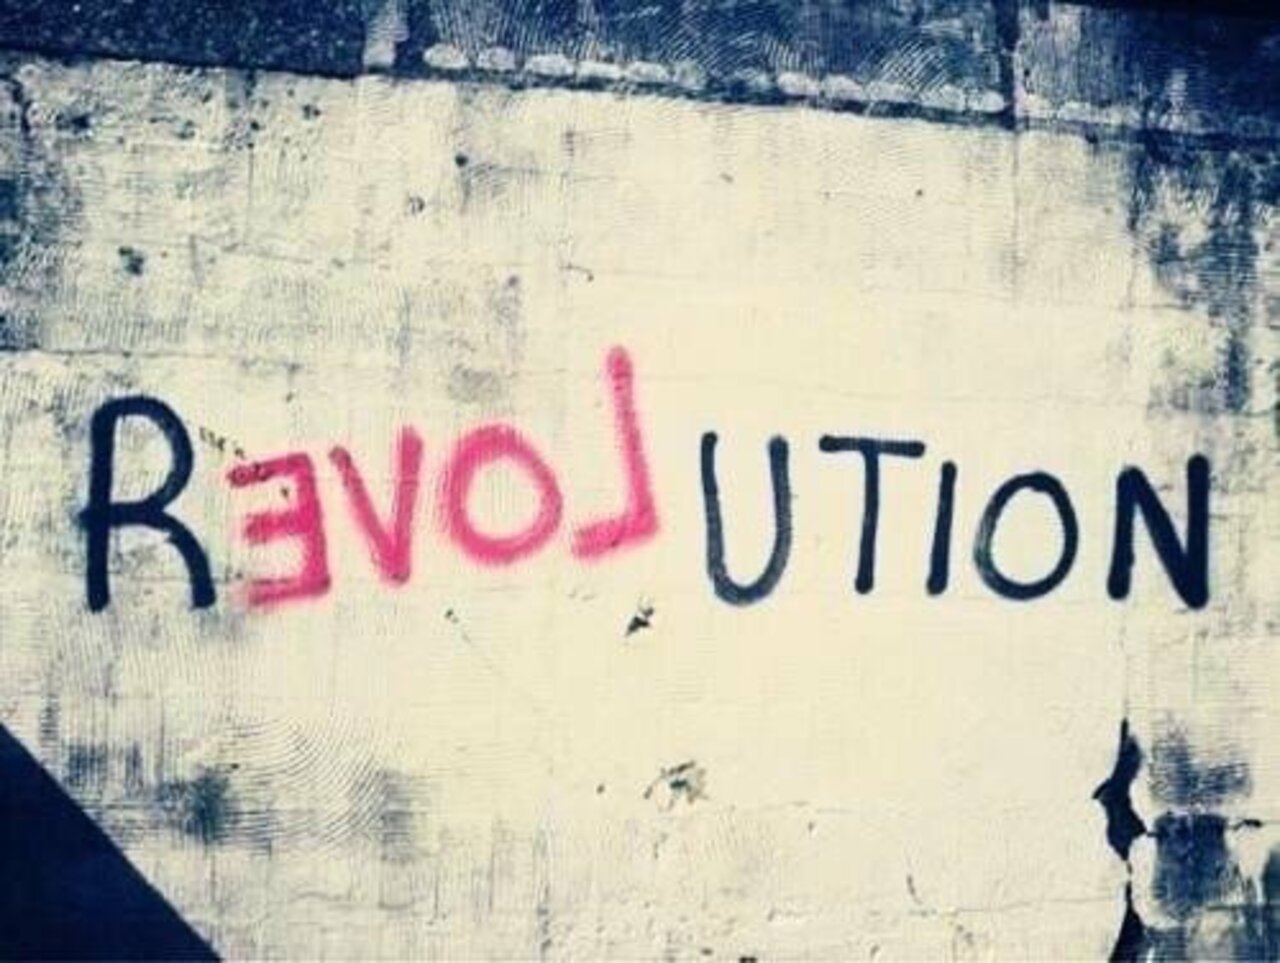 #Love Revolution – #Creative #StreetArt – Be ▲rtist – Be ▲rt Magazine https://beartistbeart.com/2016/12/02/love-revolution-creative-streetart/?utm_campaign=crowdfire&utm_content=crowdfire&utm_medium=social&utm_source=twitter https://t.co/LgaCu1Give